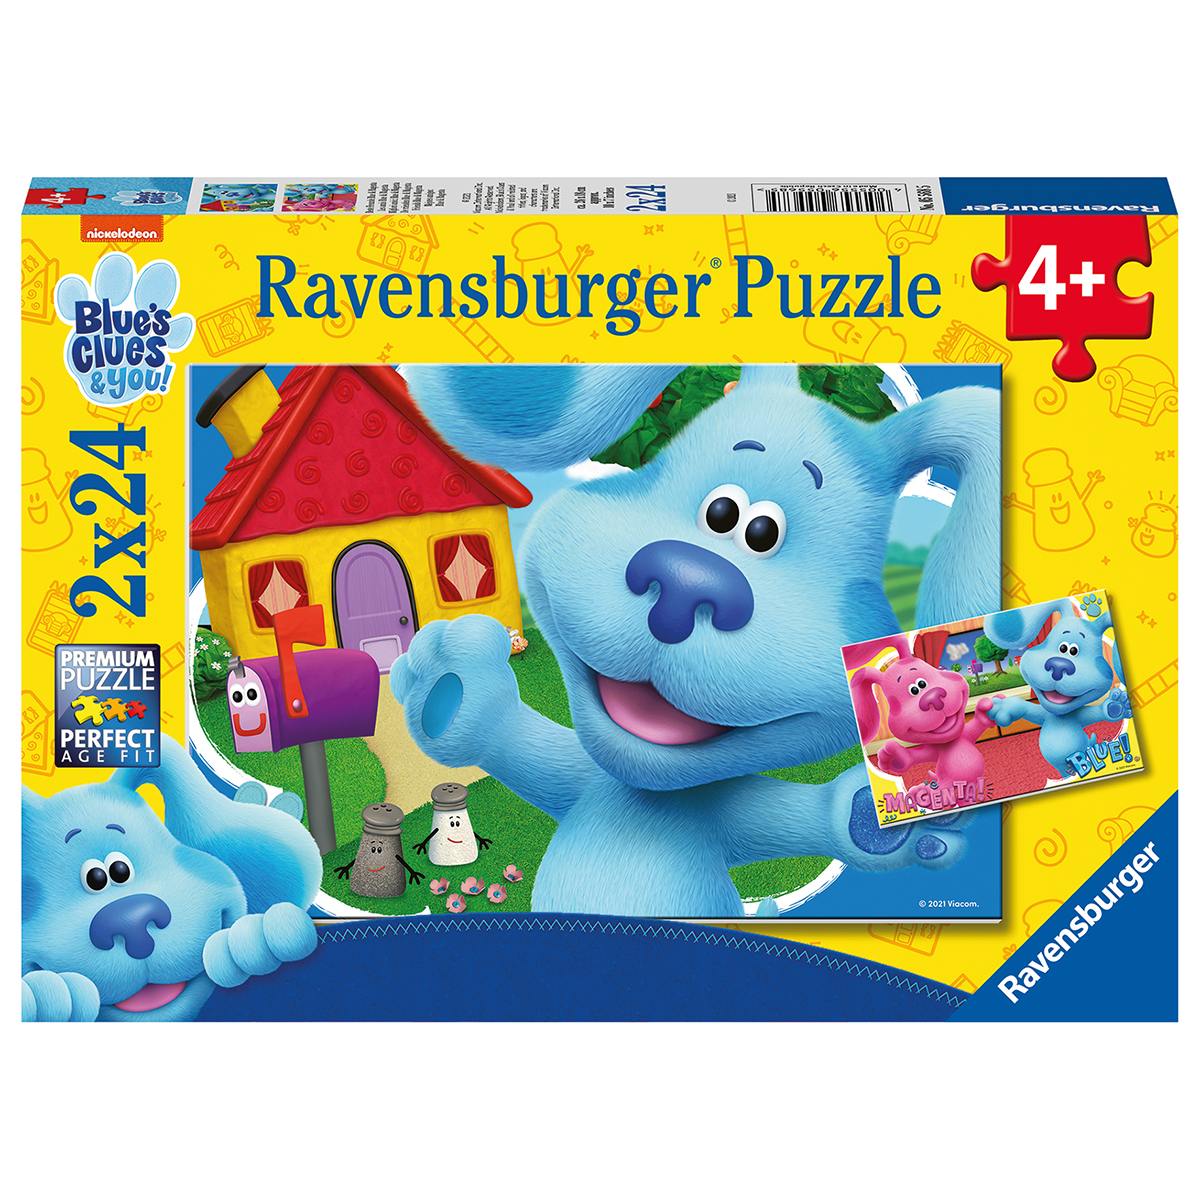 Ravensburger 2 puzzle 24 pezzi per bambini dai 4 anni - blue's clues - BLUES'S CLUES, RAVENSBURGER